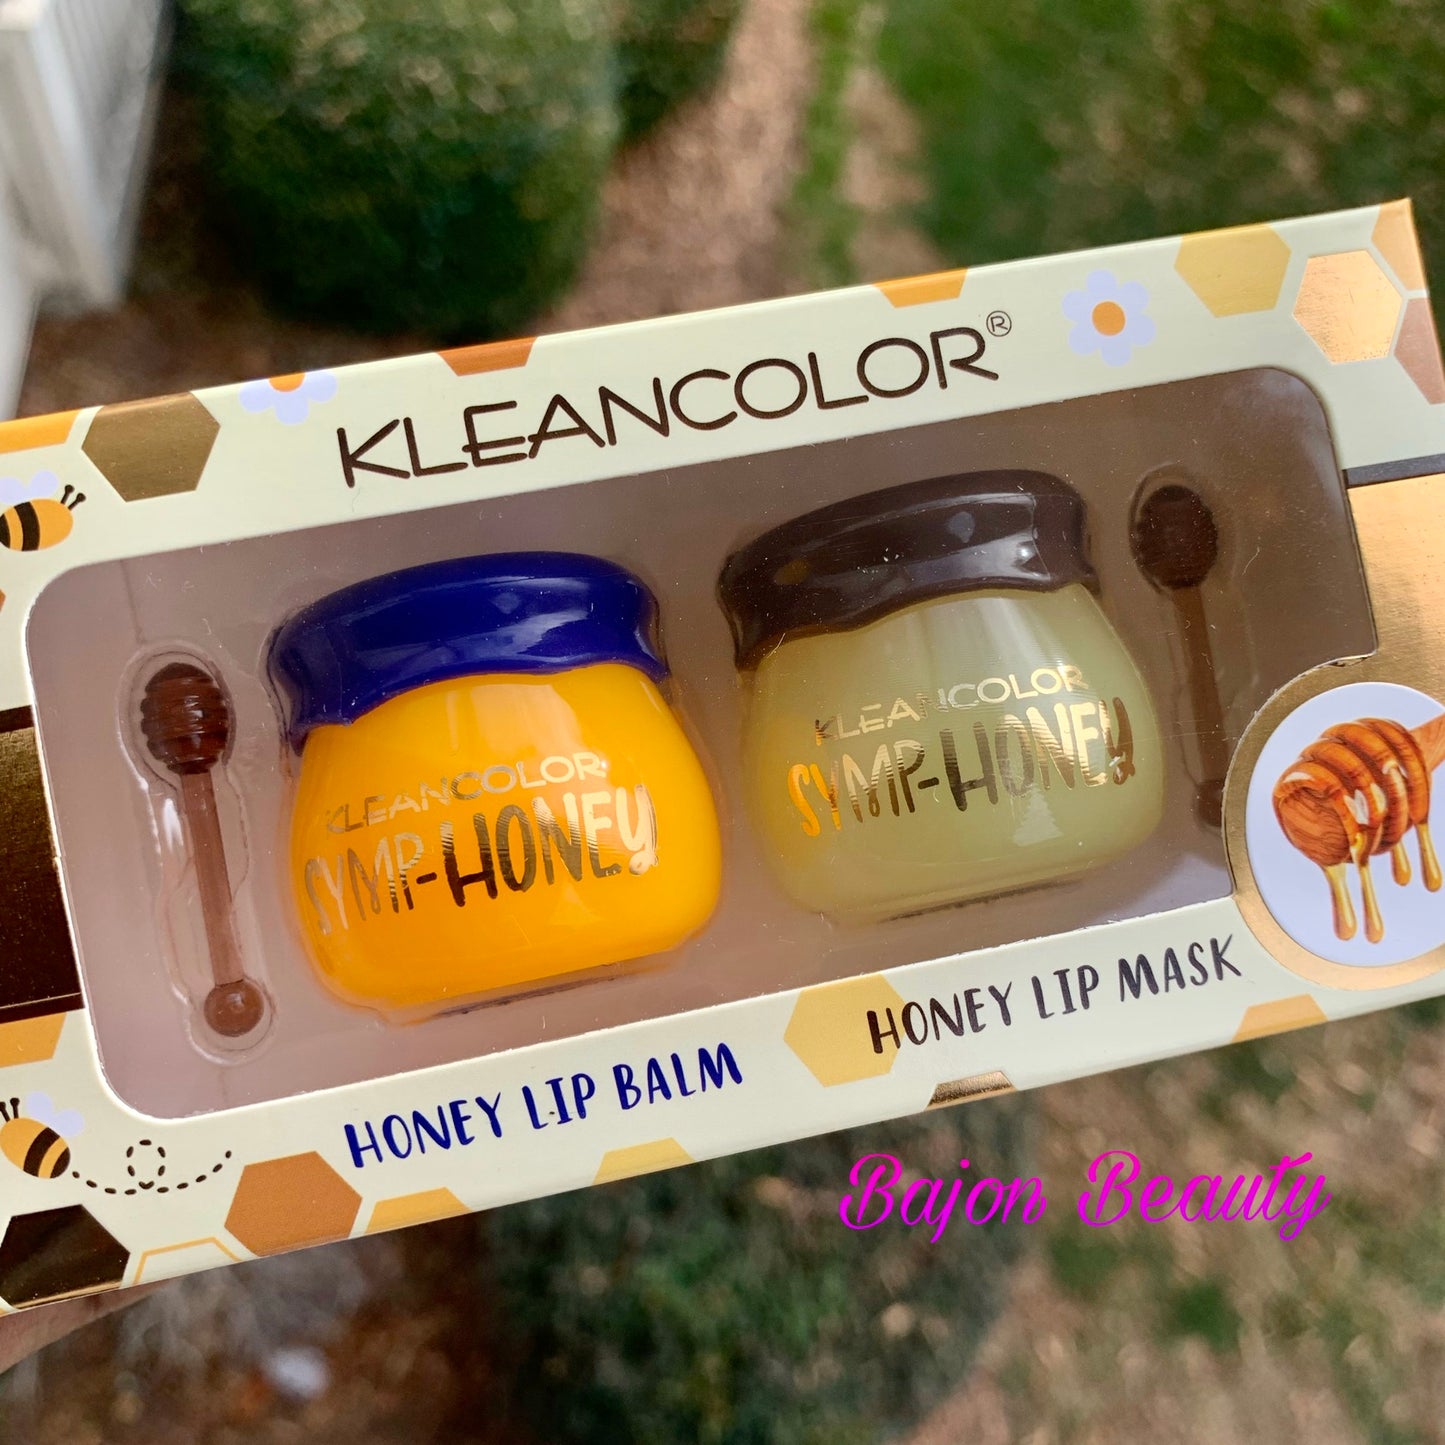 Kleancolor SYMP-HONEY Lip Care Set